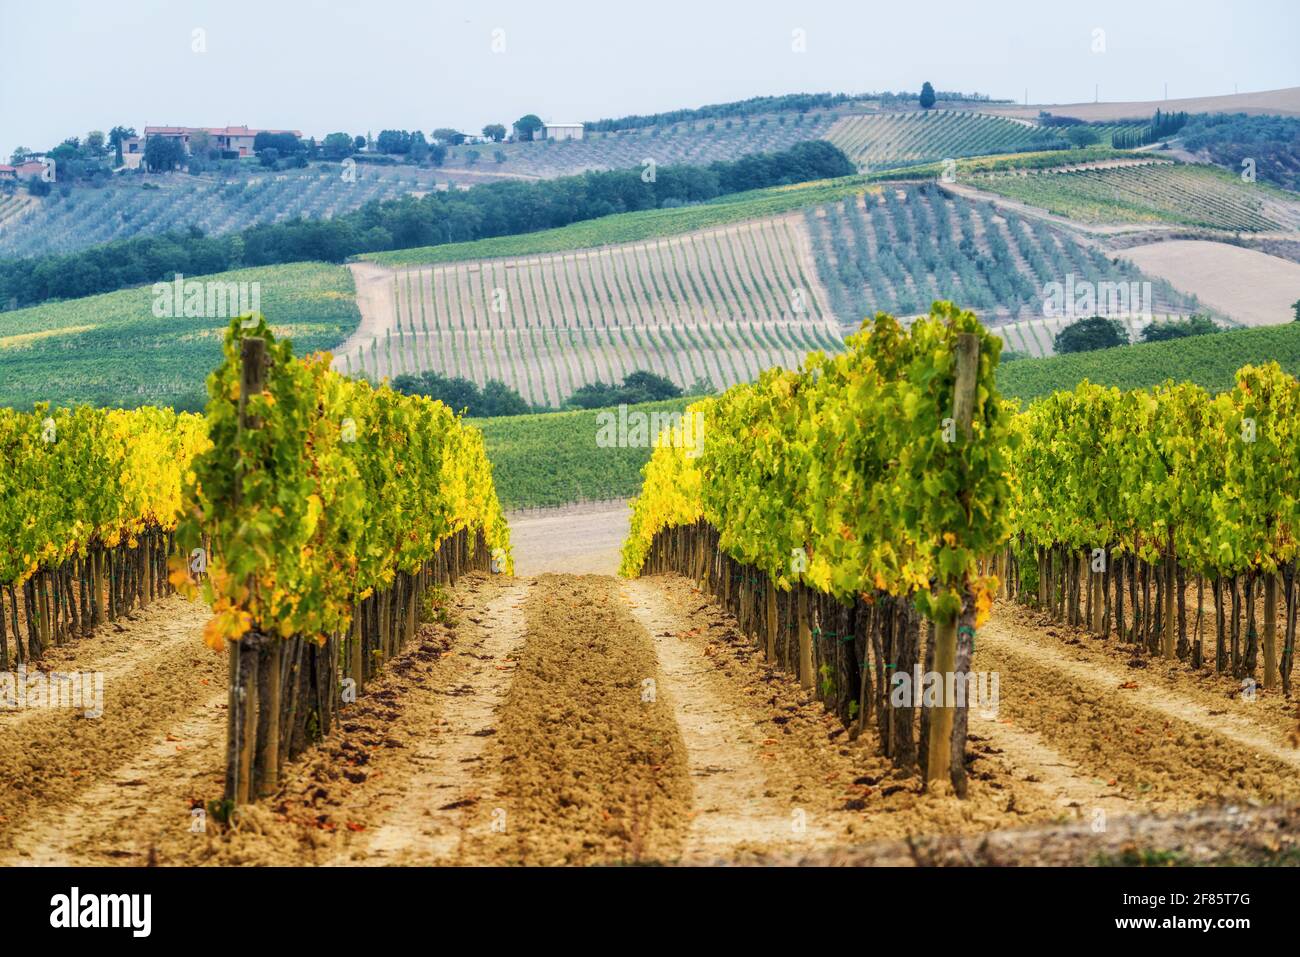 Paesaggio viticolo in Toscana, Italia. I vigneti toscani ospitano il vino più importante d'Italia. Foto Stock